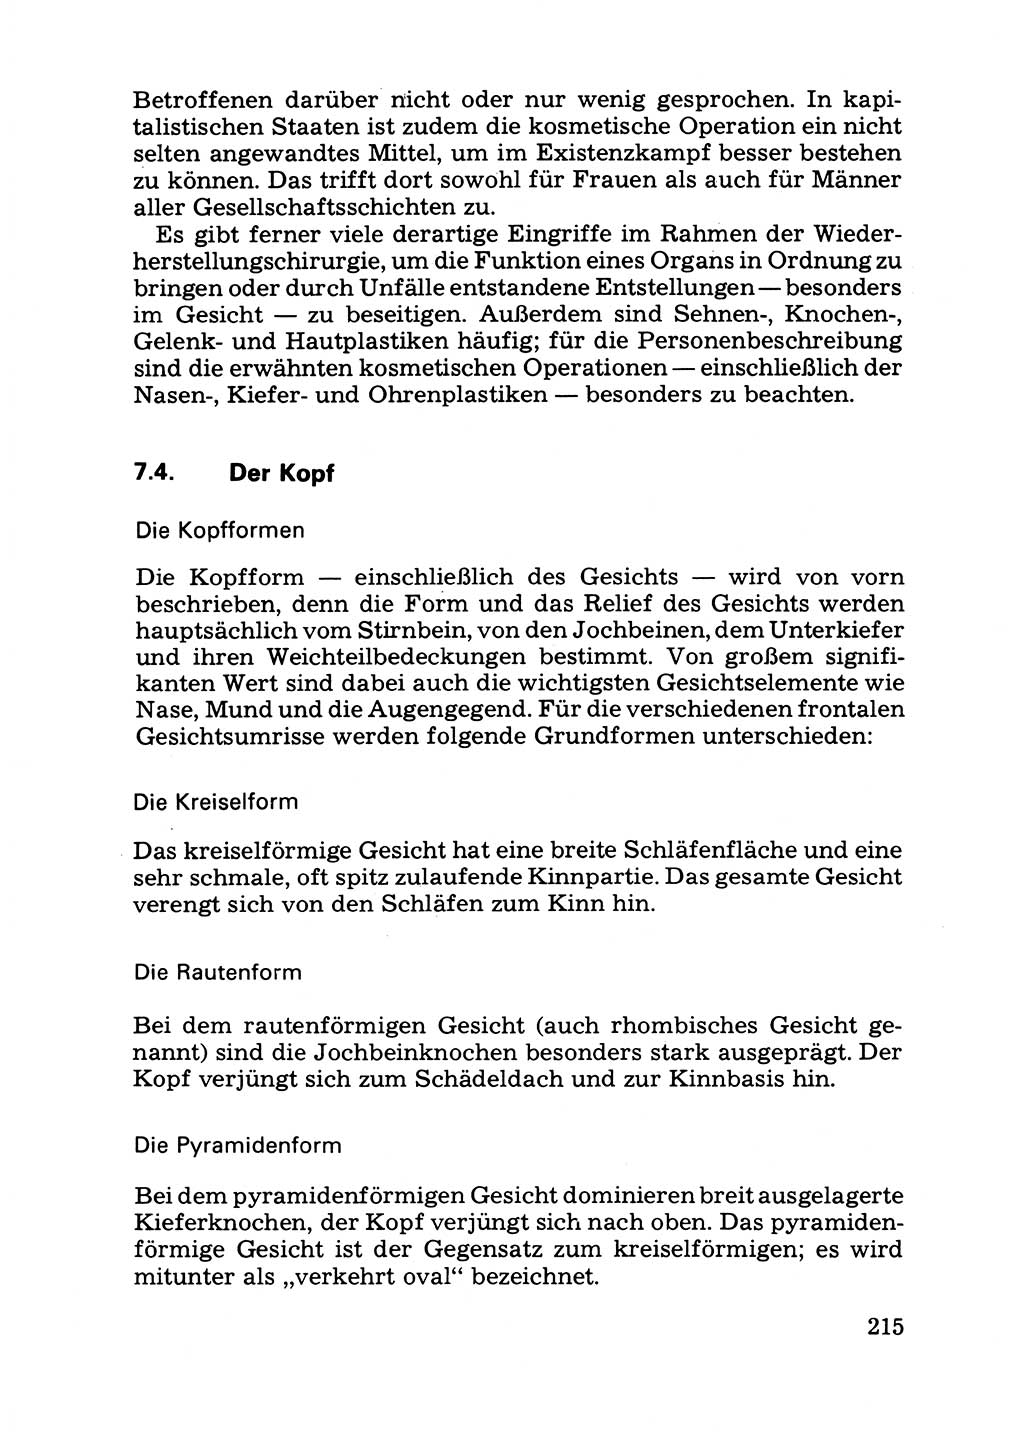 Das subjektive Porträt [Deutsche Demokratische Republik (DDR)] 1981, Seite 215 (Subj. Port. DDR 1981, S. 215)